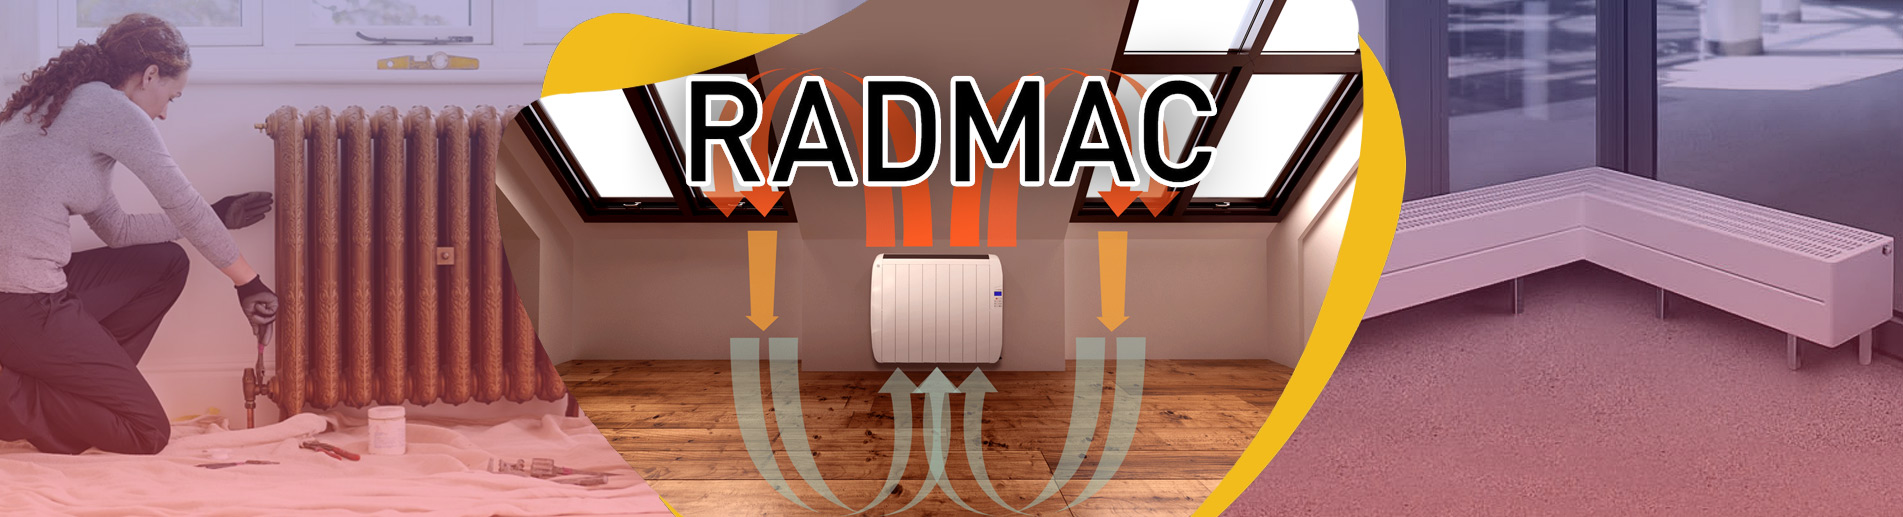 RADMAC BELGESİ Avrupa Radyatör KALİTE Belgesi